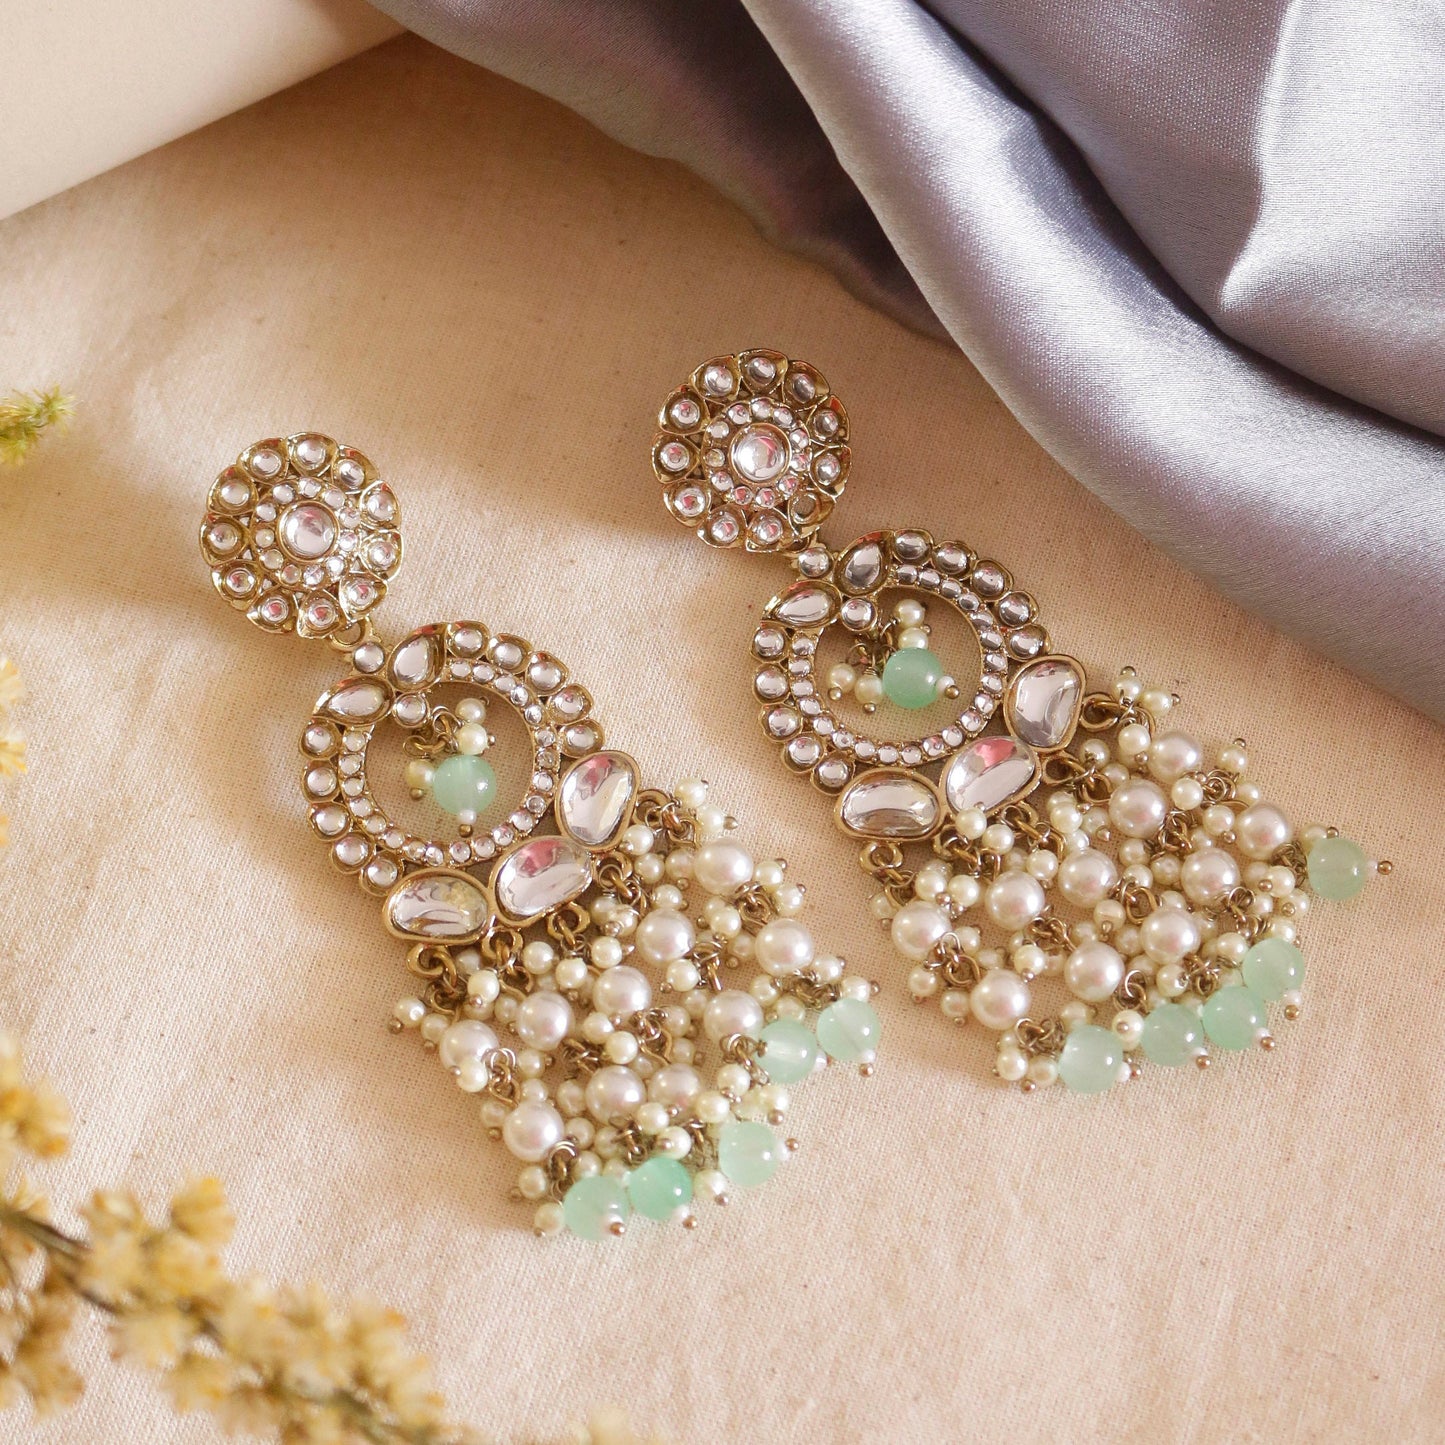 Swisni Alloy Golden Earrings with White & Light Green Beads For Women|For Girls|Gifting|Anniversary|Birthday|Girlfriend